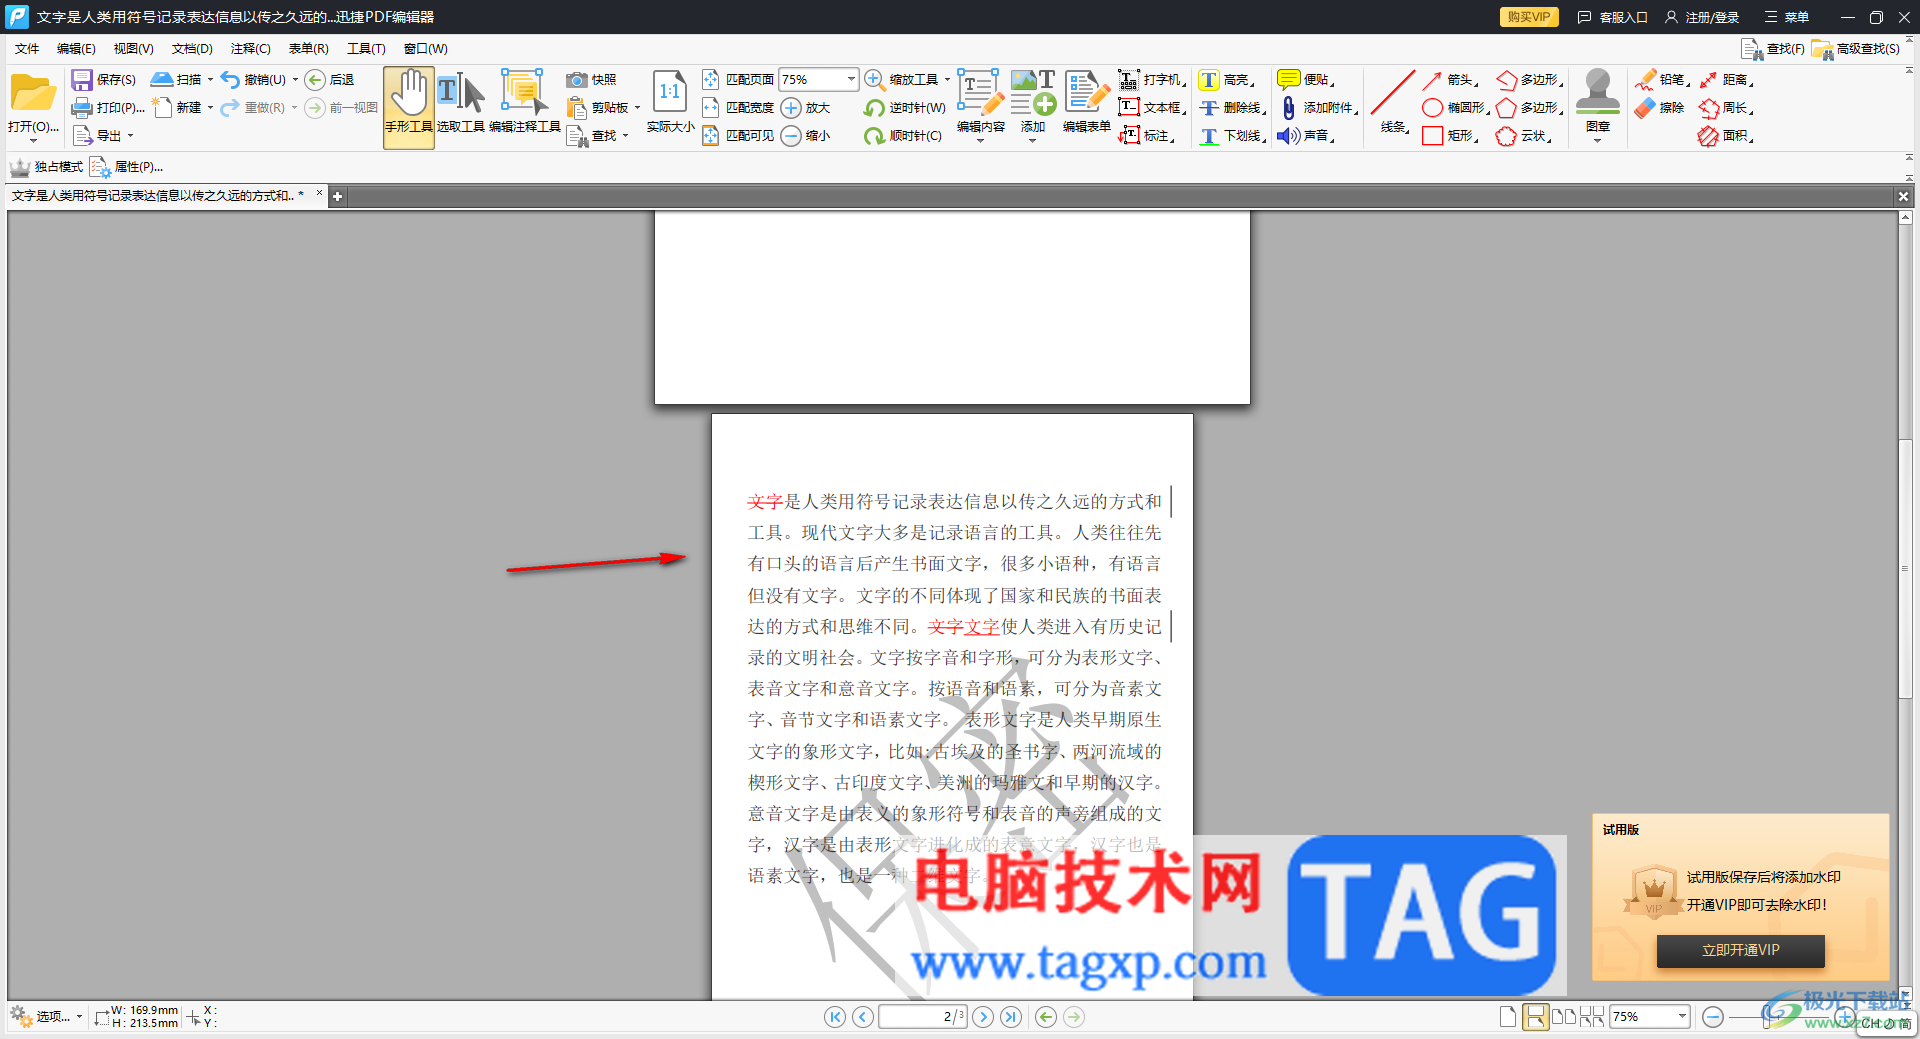 迅捷PDF编辑器裁剪页面的方法